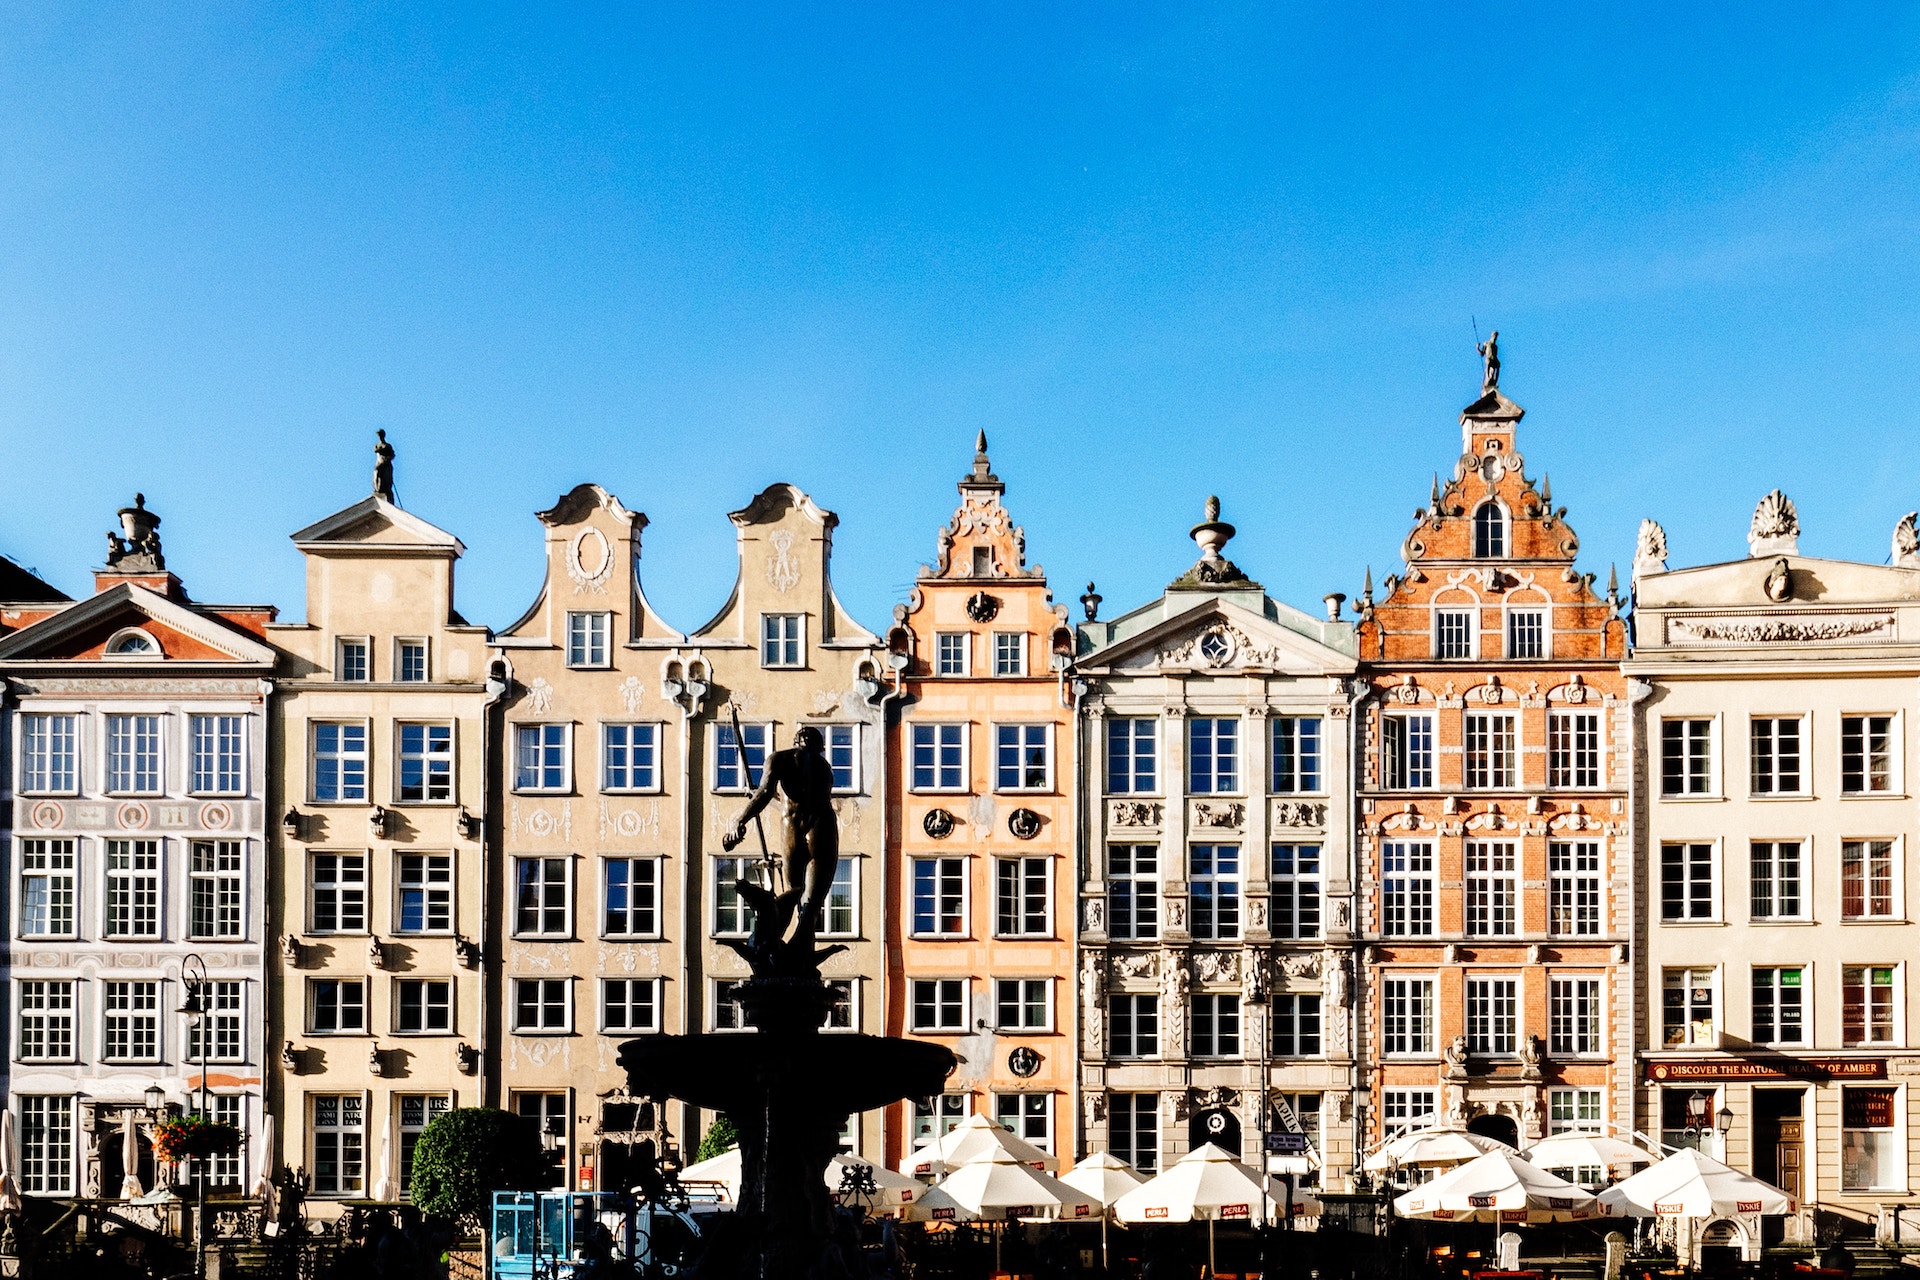 Gdansk Old Town. Image: Andrea Anastasakis / Unsplash